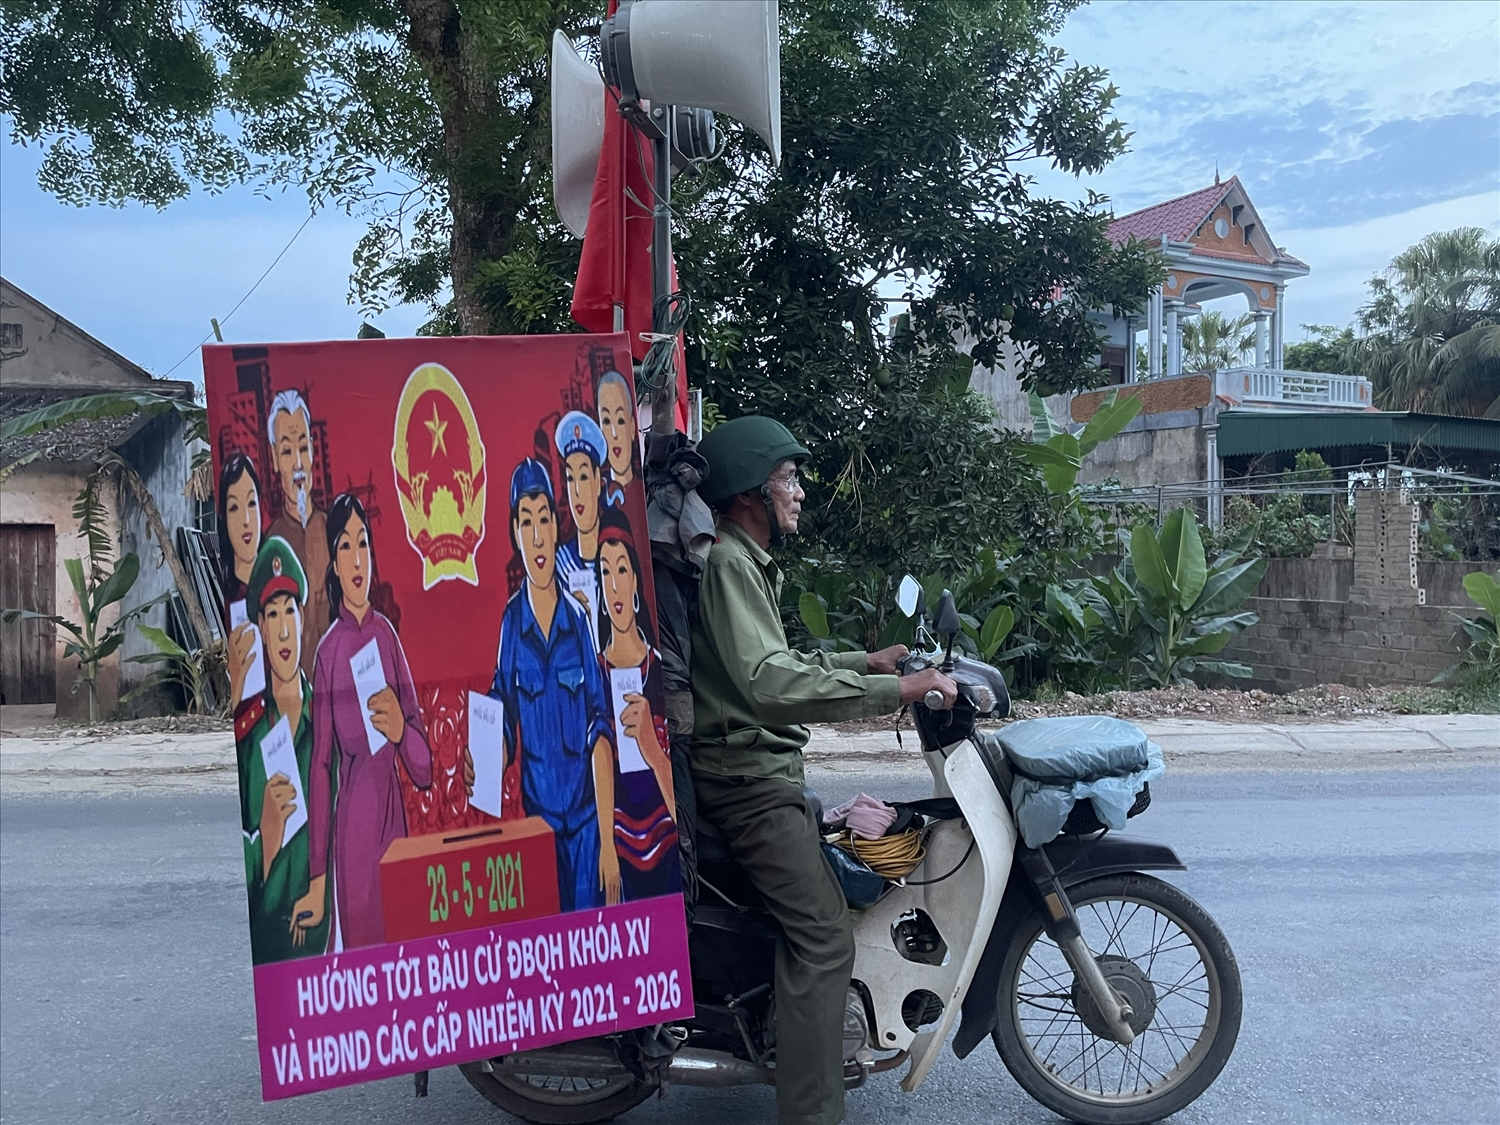 Ông Phạm Ngọc Chiêng, cùng bộ loa, máy phát, cờ và băng rôn với các khẩu hiệu tuyên truyền về phòng chống dịch Covid-19, về cuộc bầu cử ĐBQH và HĐND các cấp.